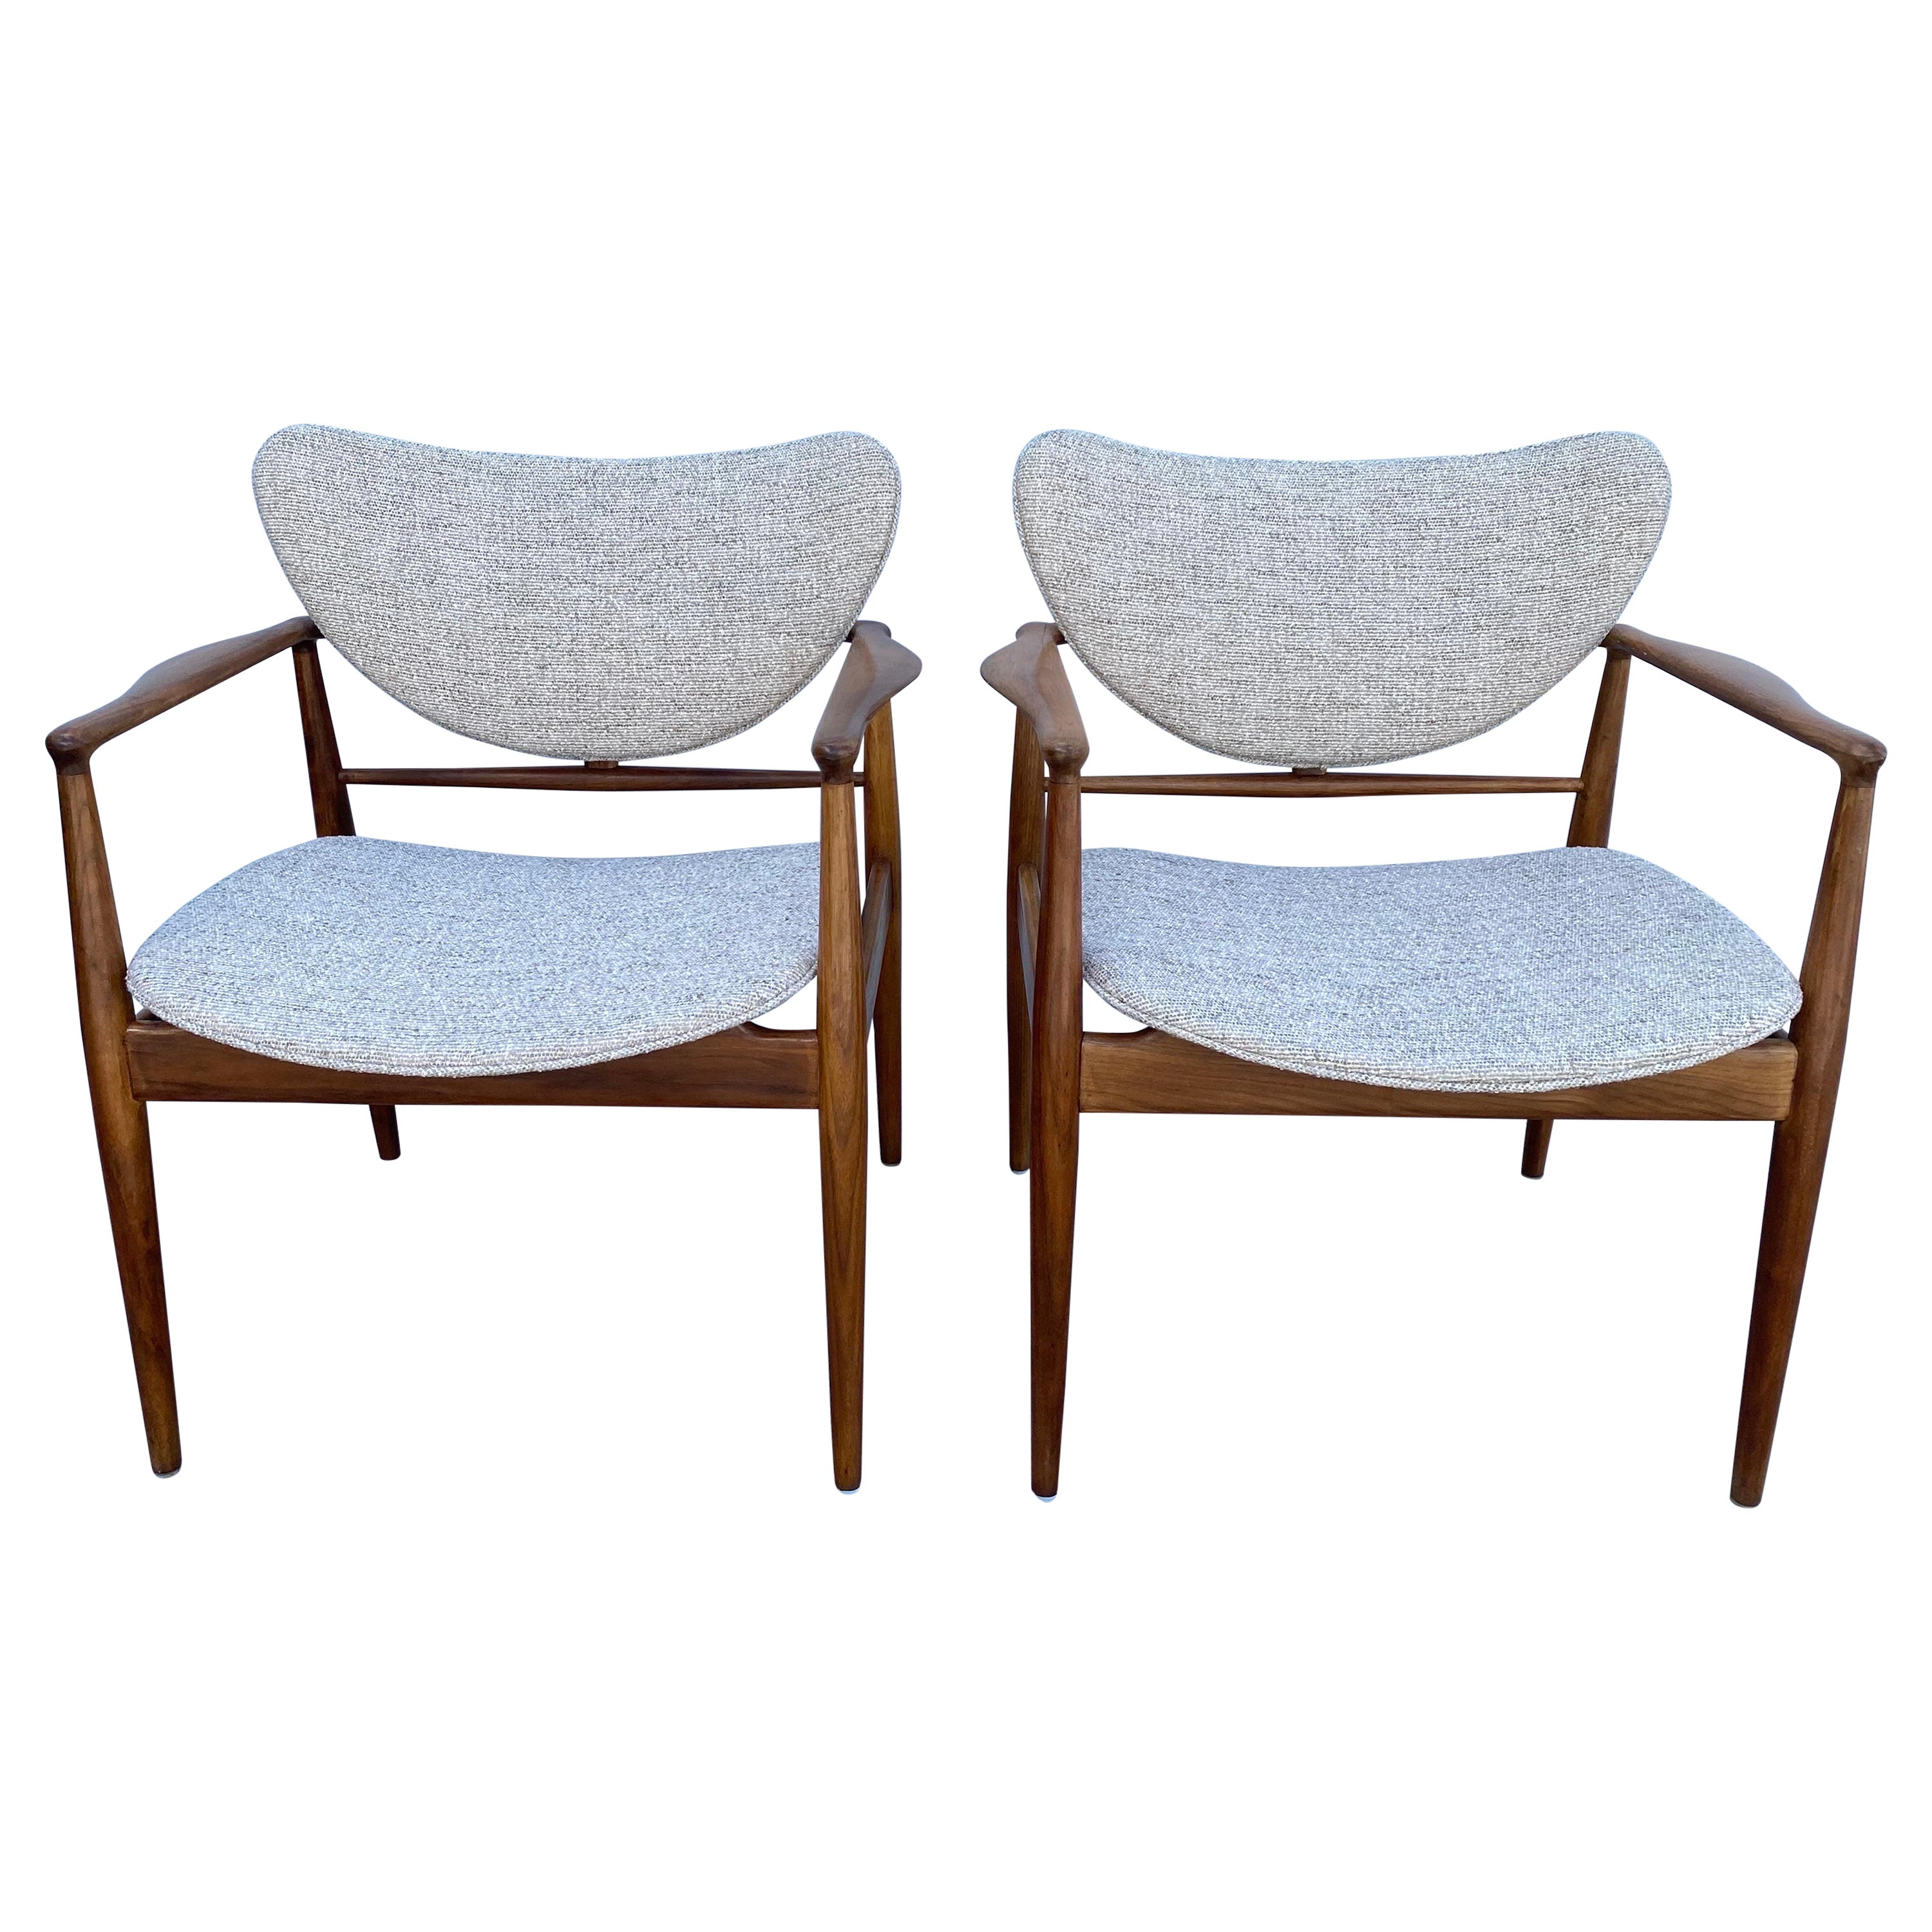 Pair of Finn Juhl No. 48 Danish Modern Chairs for Baker, 1950's For Sale